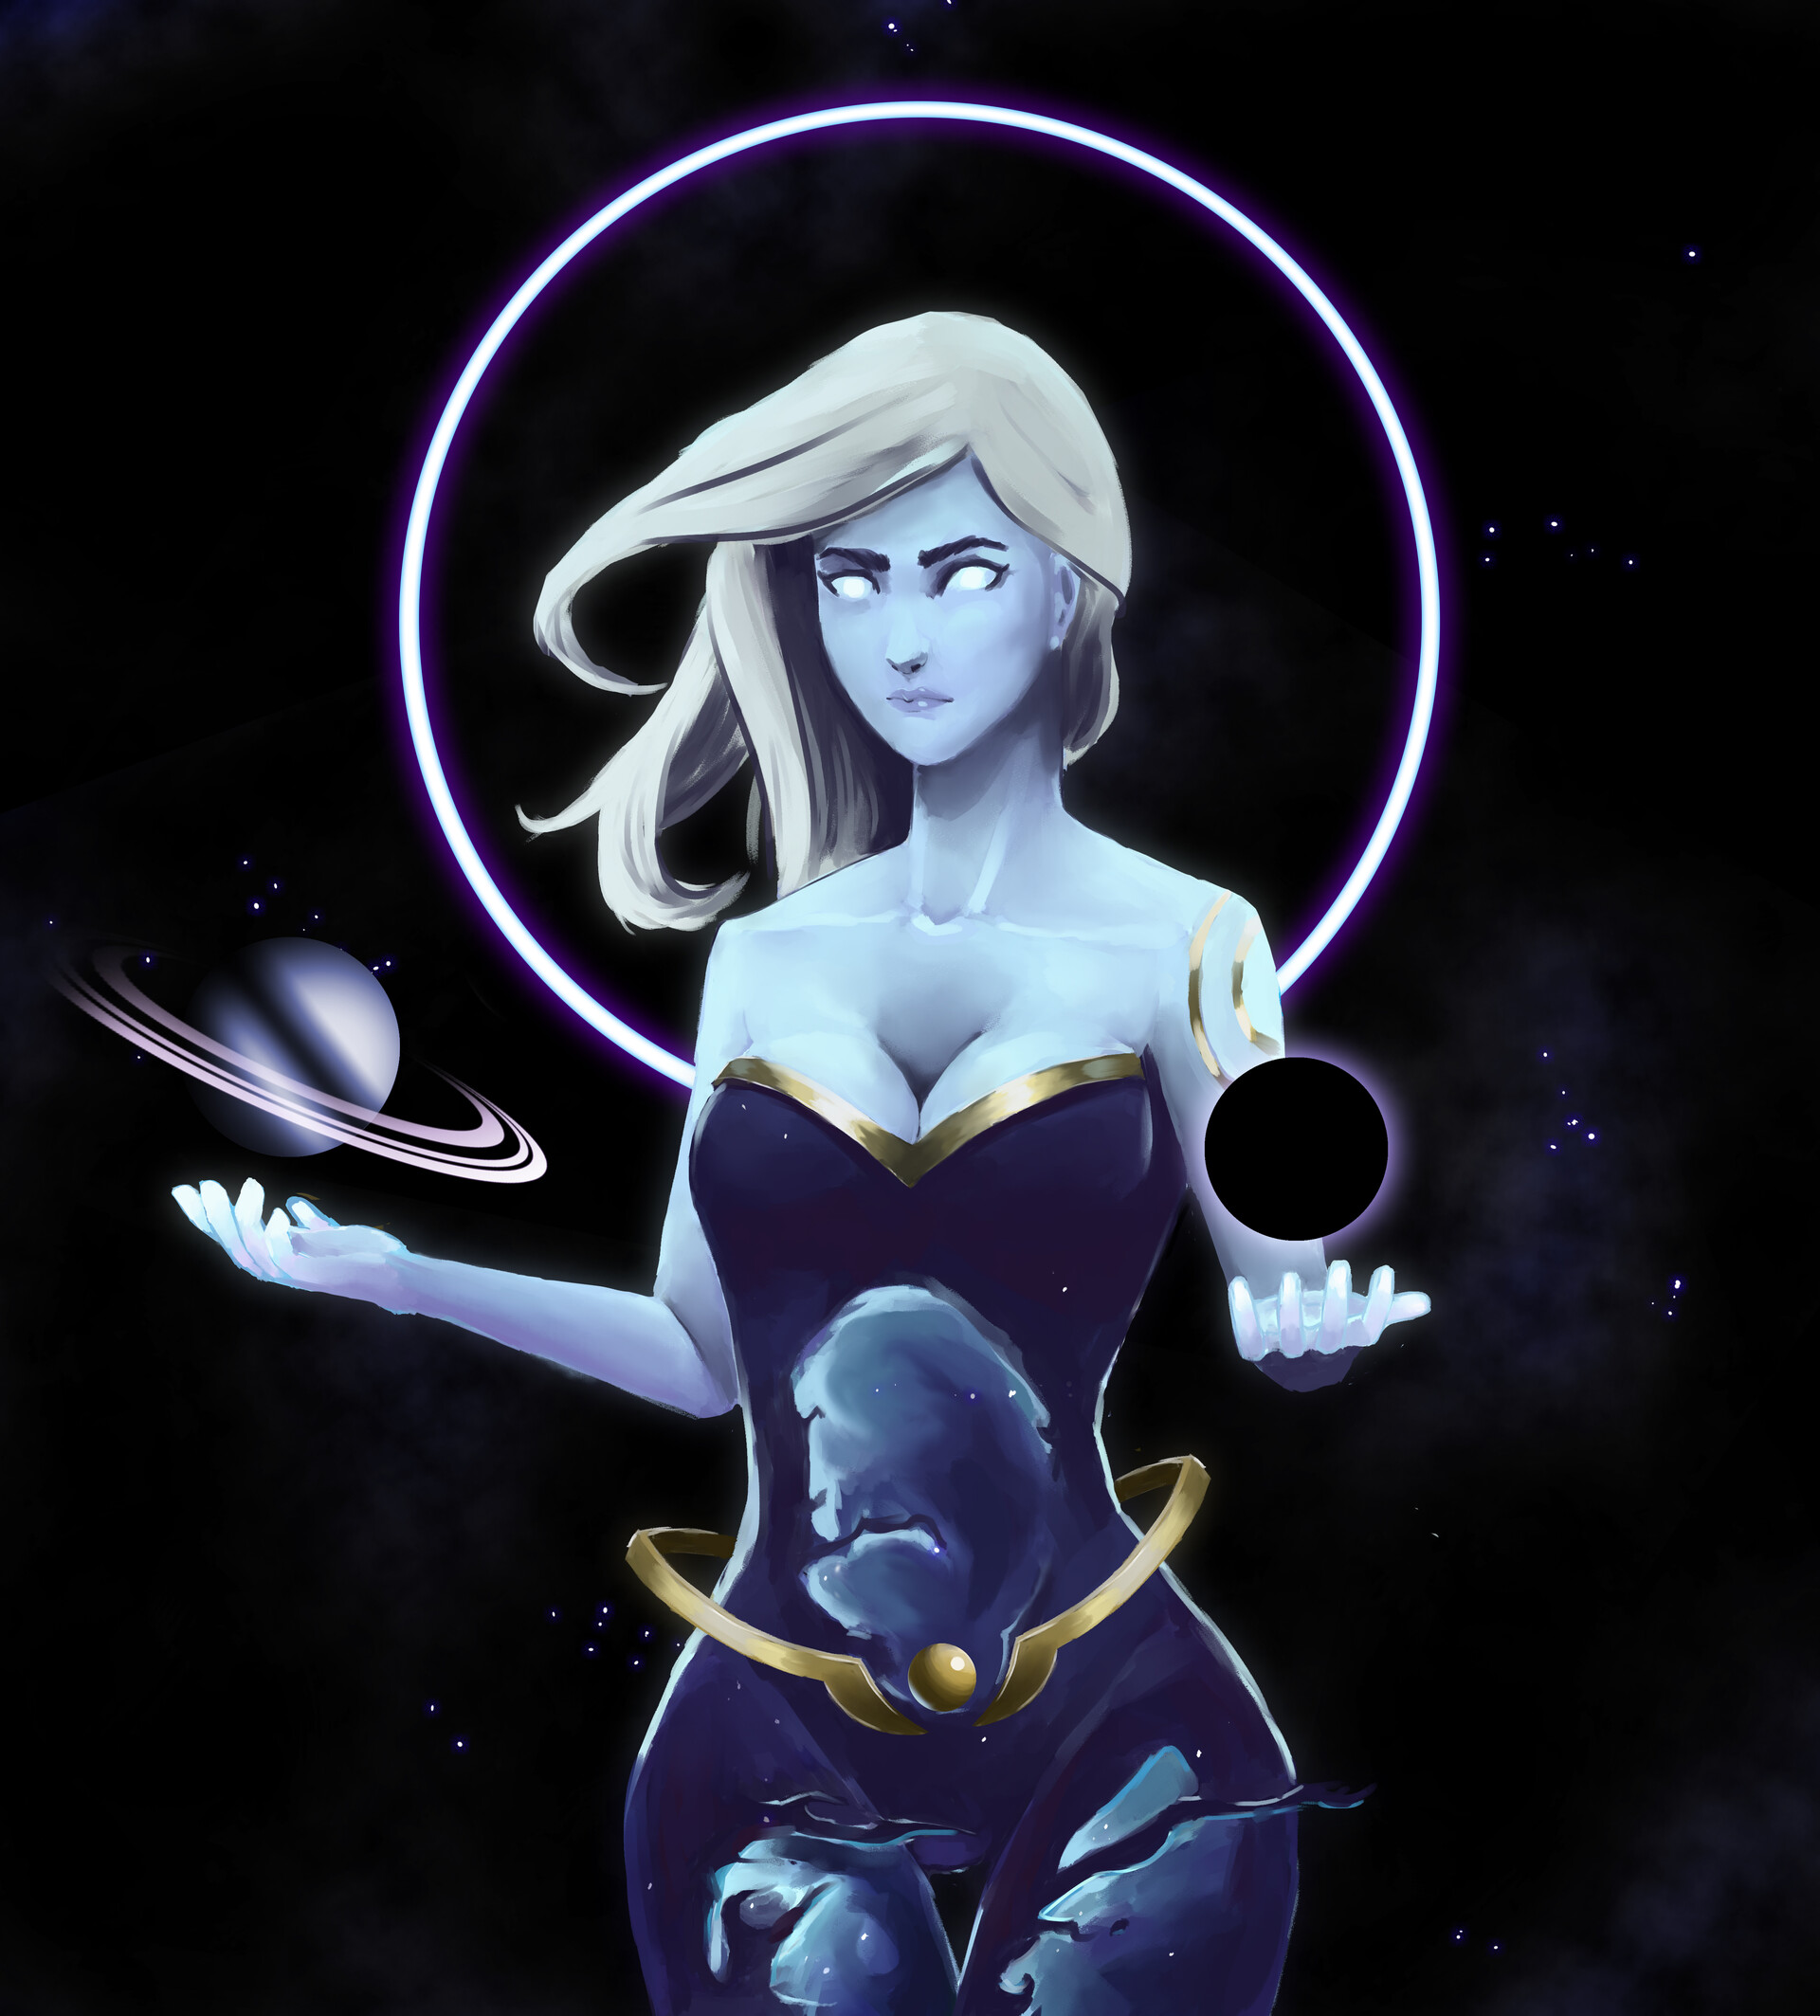 ArtStation - Dark Cosmic Camille - League of Legends fanart